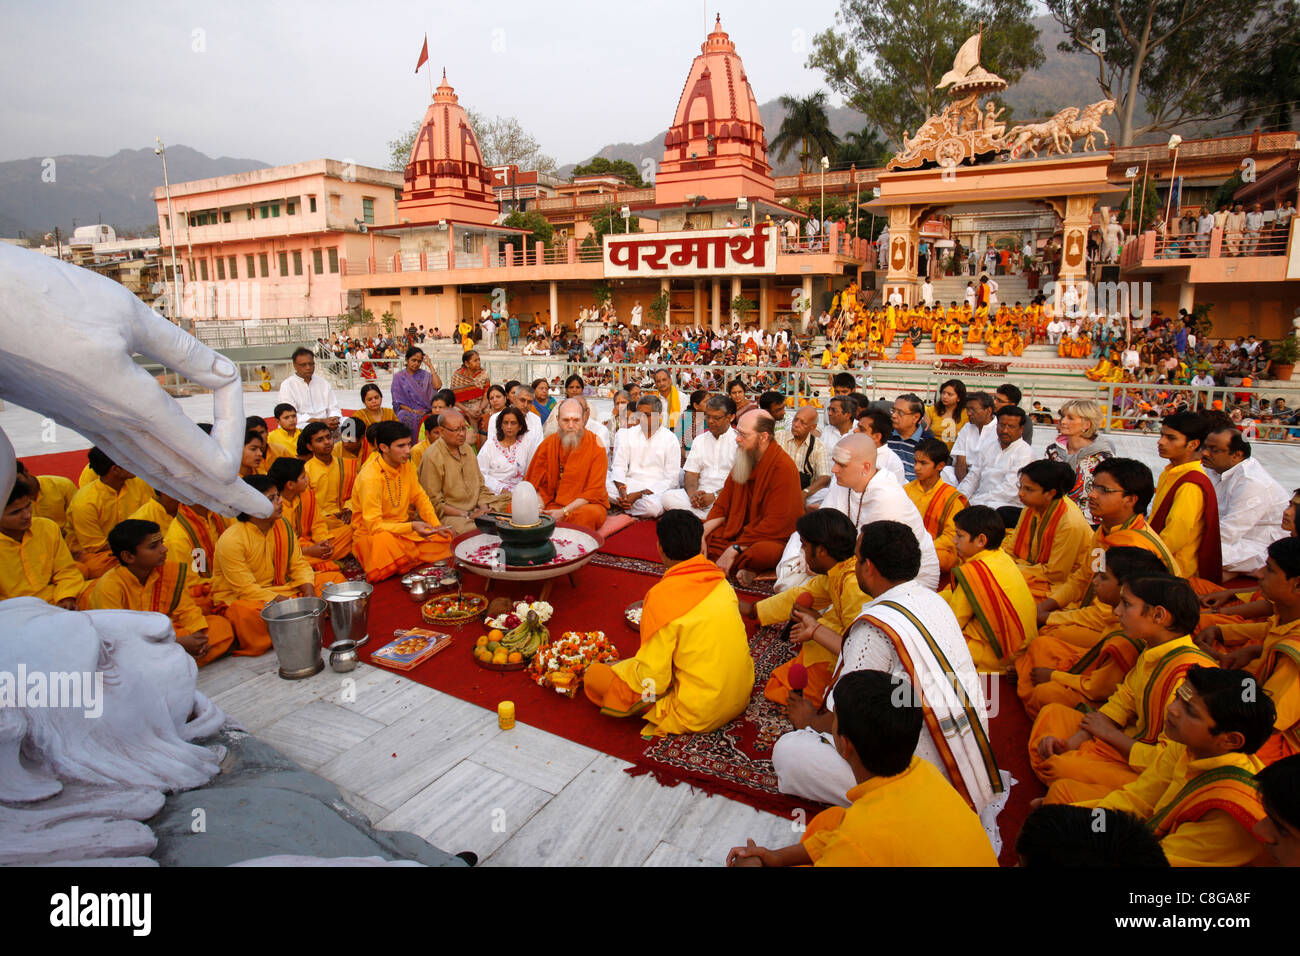 Evening celebration in Parmath, Rishikesh, Uttarakhand, India Stock Photo